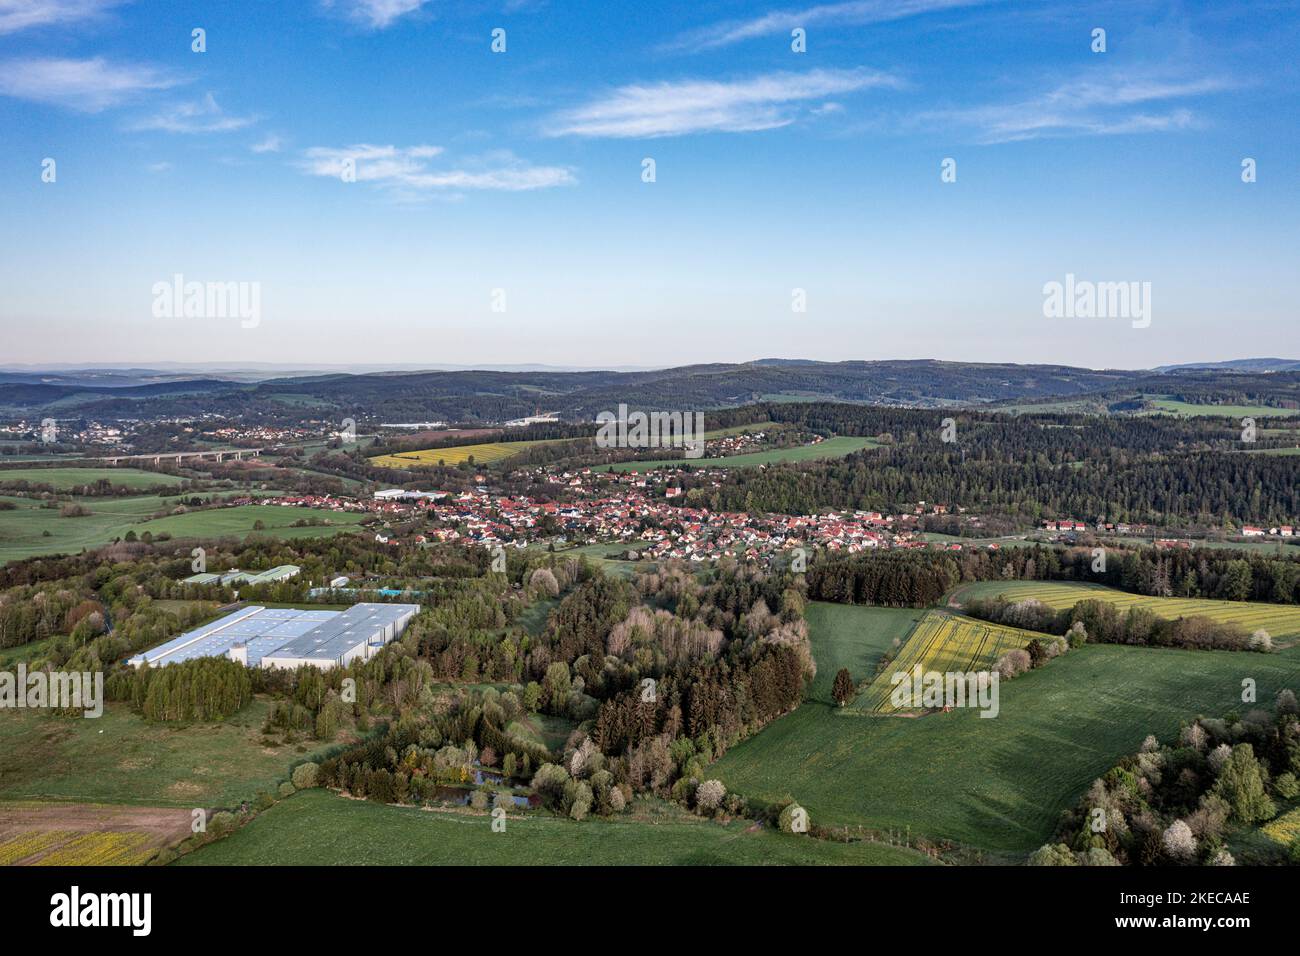 Alemania, Turingia, Schleusingen, Hinternah, edificio de la empresa, Pueblo, bosque, campos, Schleusingen en el fondo, la visión general, vista aérea Foto de stock